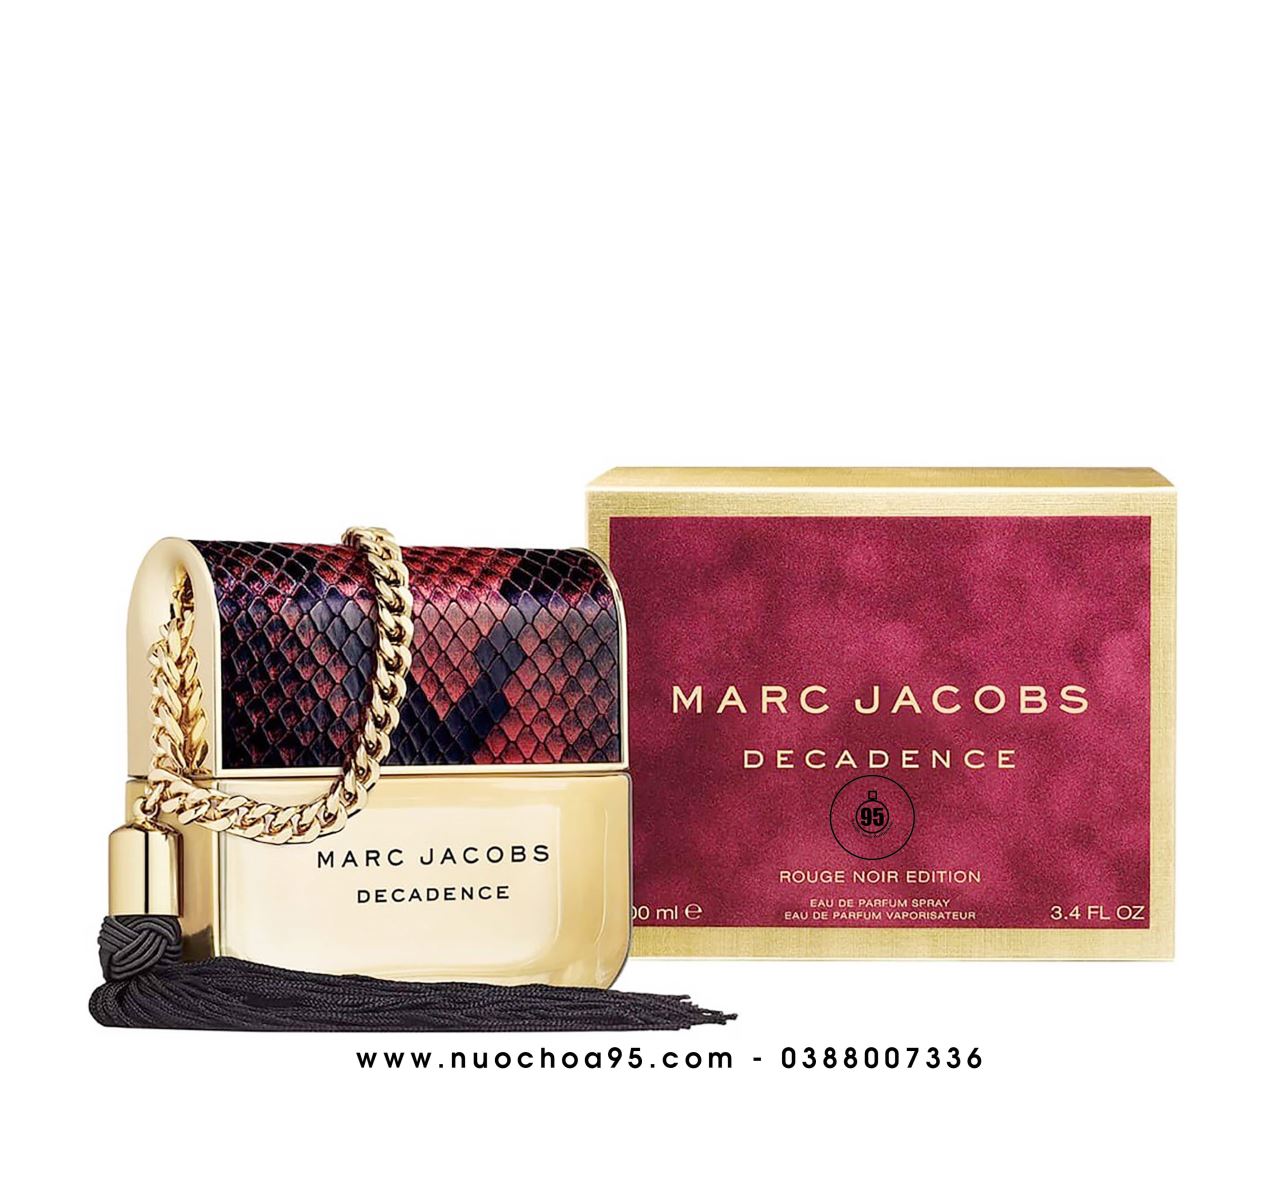 Nước hoa Marc Jacobs Decadence Rouge Noir Edition